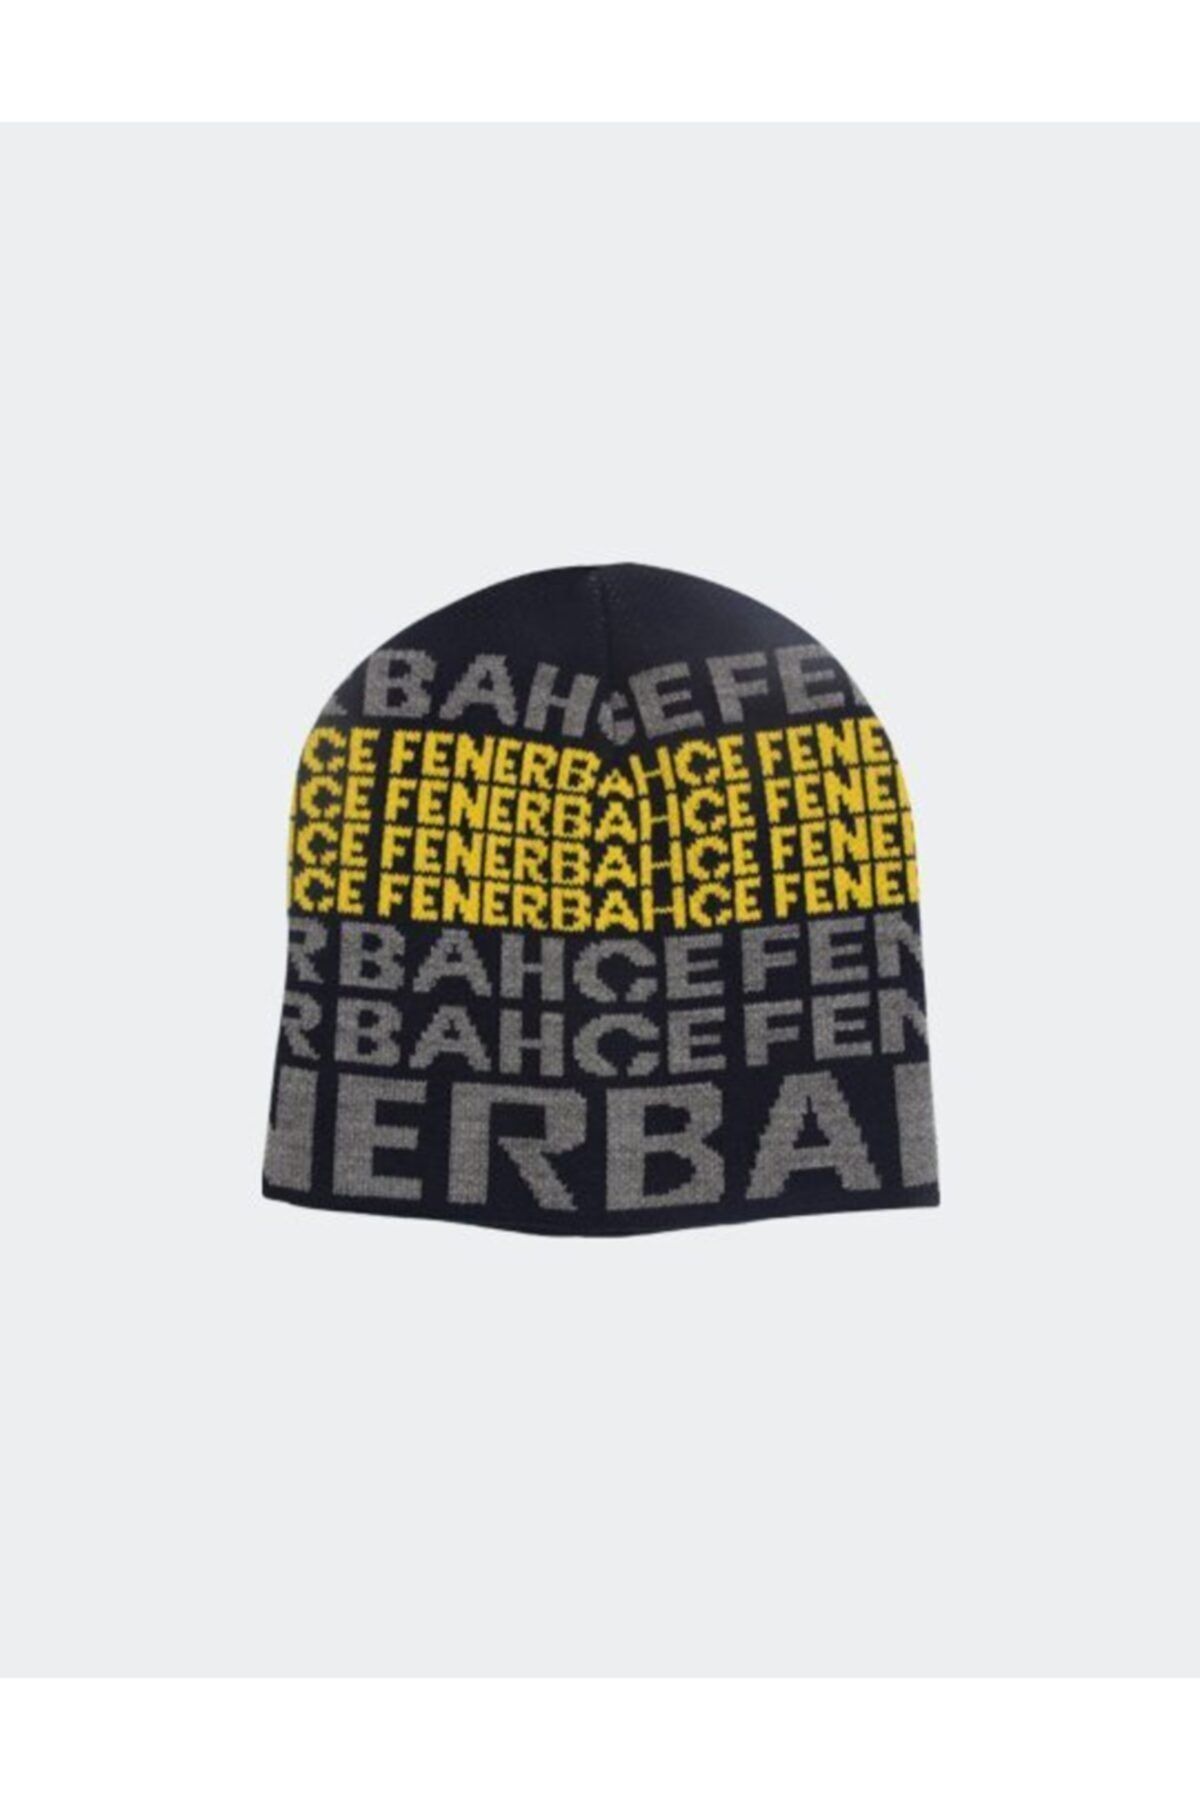 Fenerbahçe Fenerbahçe Yazılı Bere